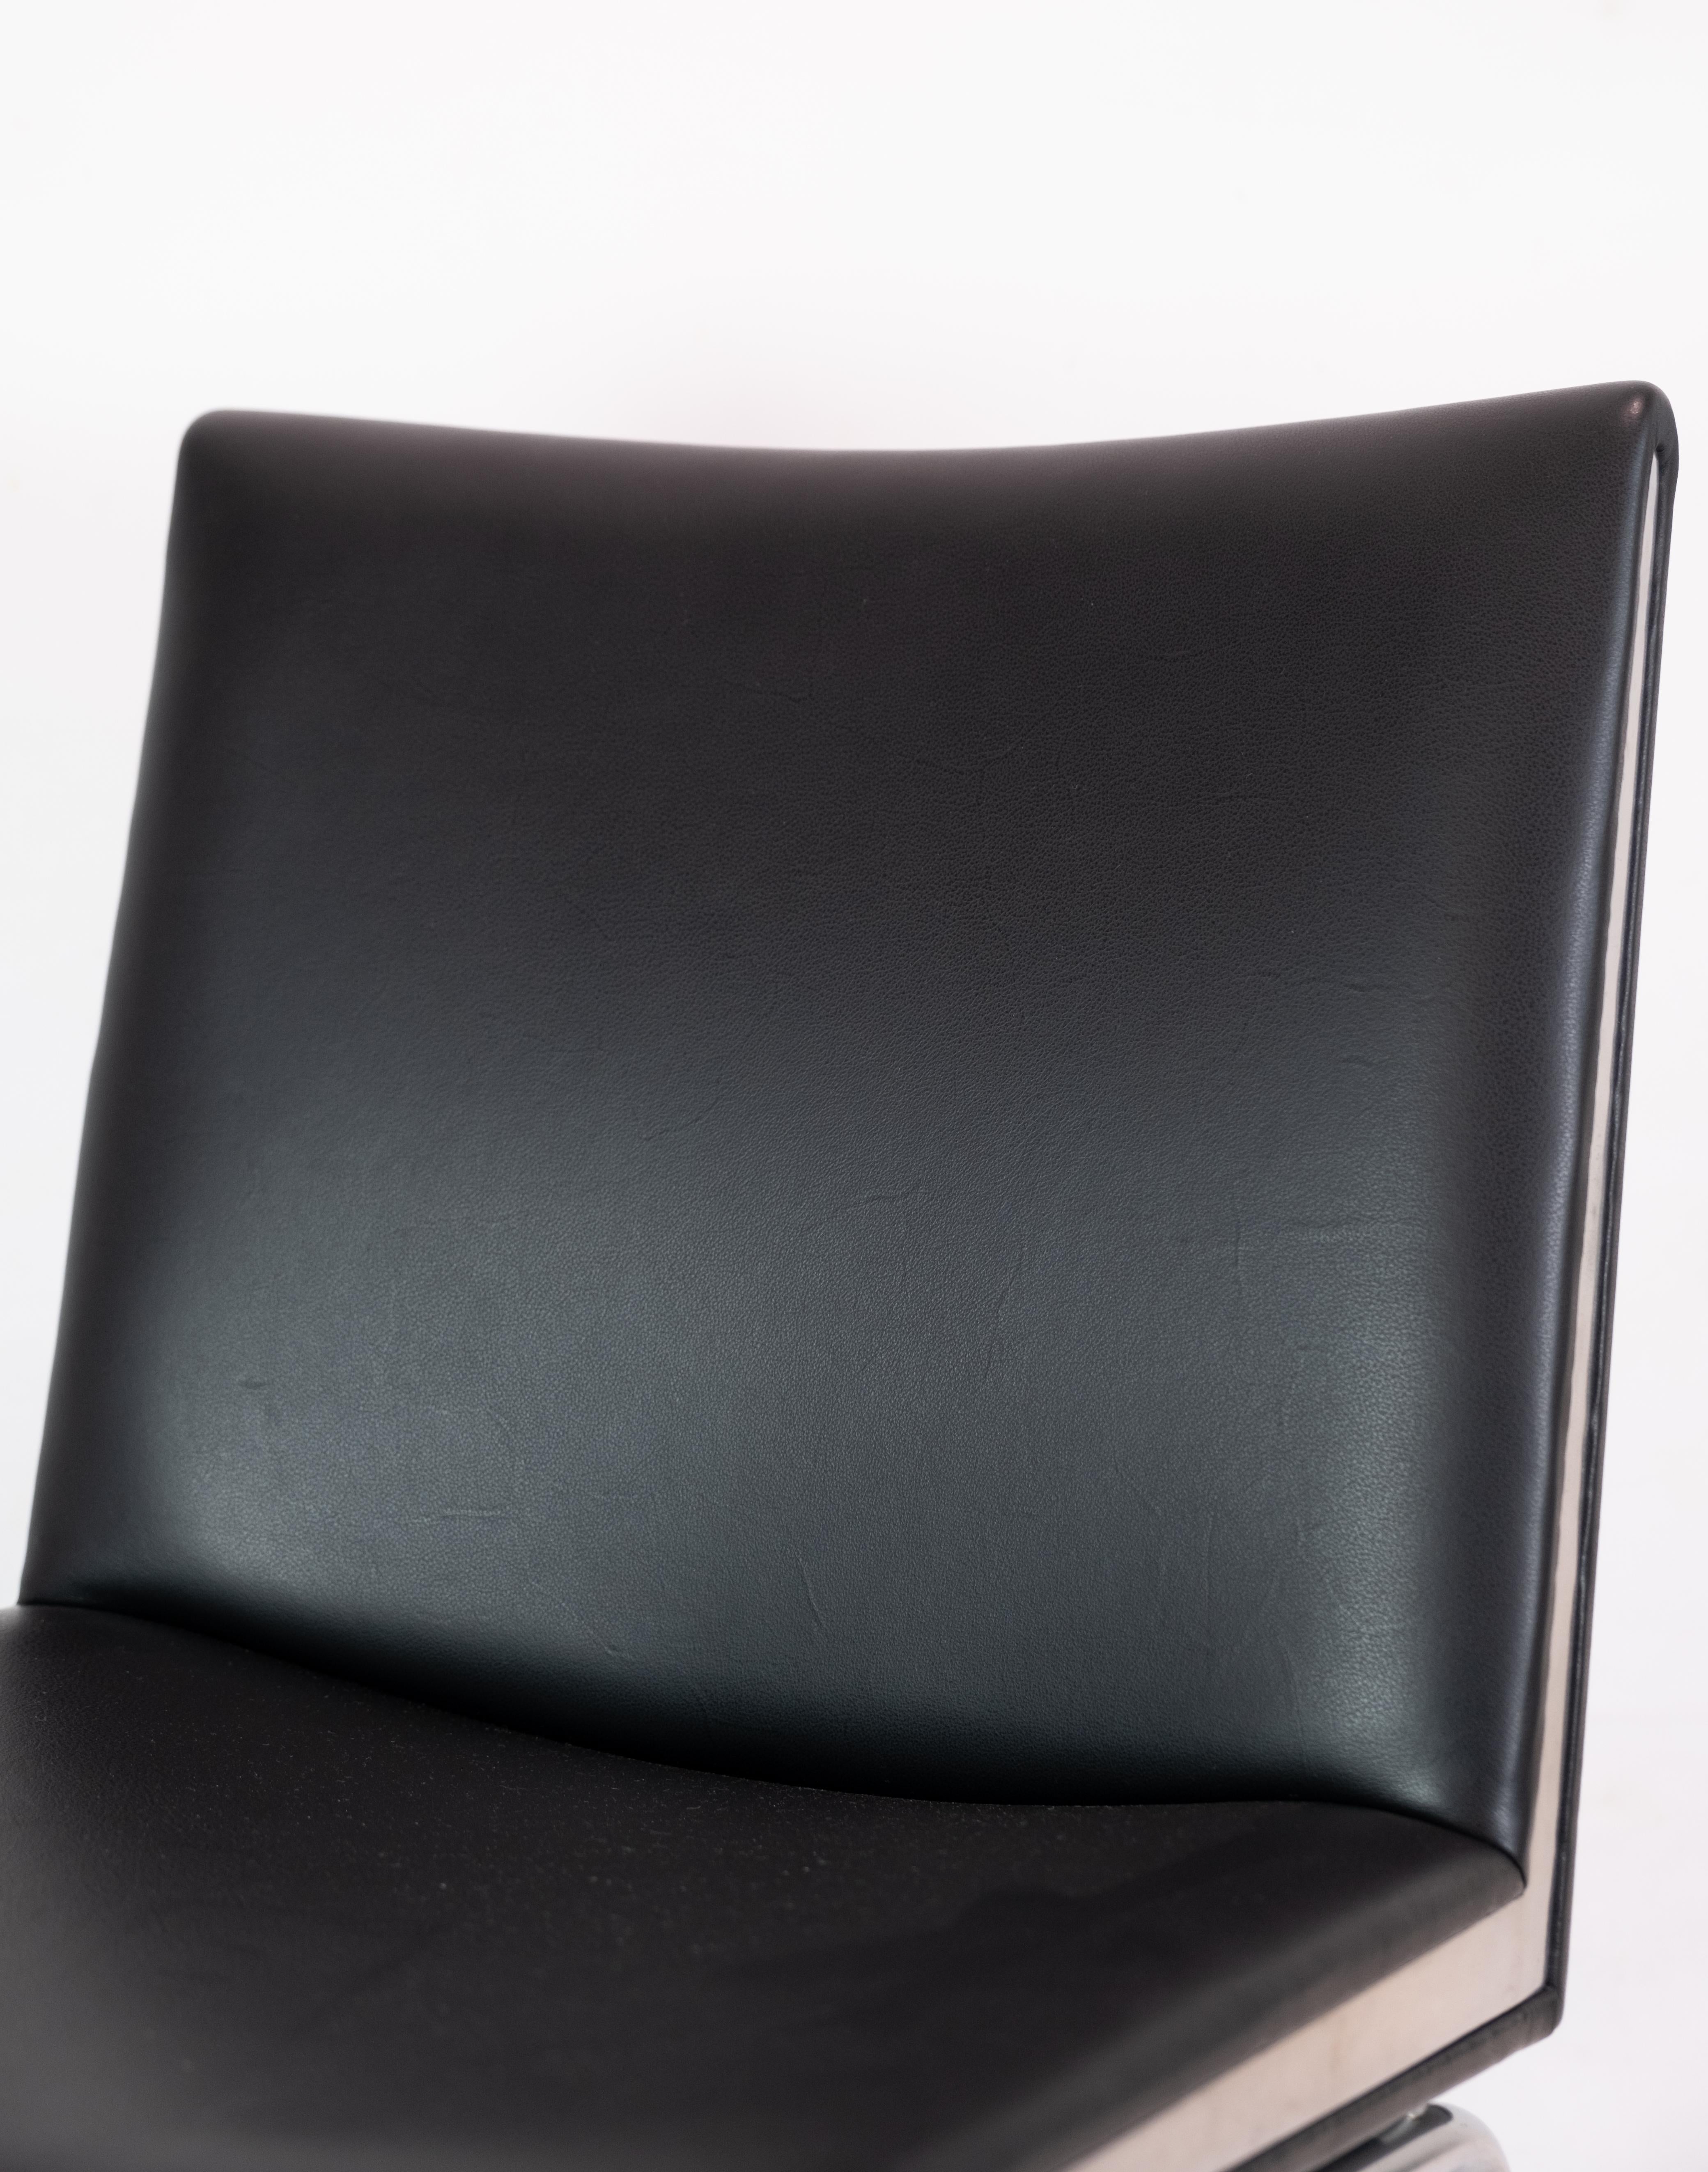 Kastrup Chair in Black Leather Model CH401 By Hans J. Wegner & Carl Hansen & Søn For Sale 4